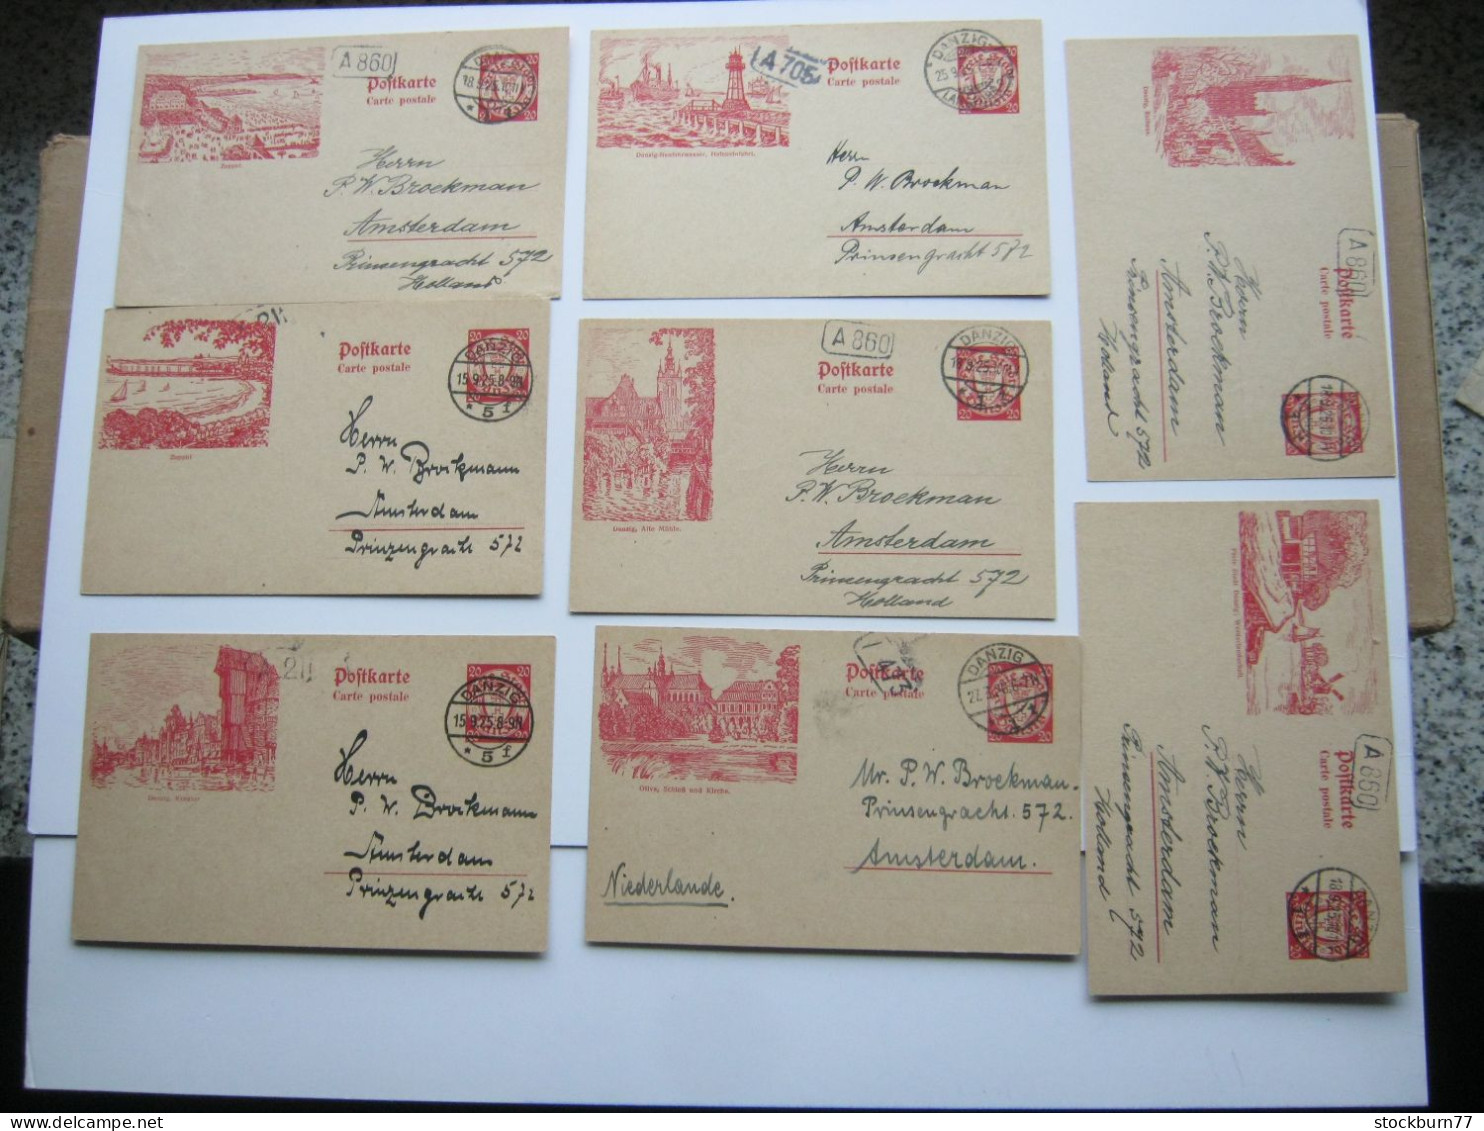 DANZIG ,    1925 , 20 Pfg. Bildganzsache , 8 Karten Ins Ausland Verschickt ( Niederlande), Sehr Selten ! - Postal  Stationery